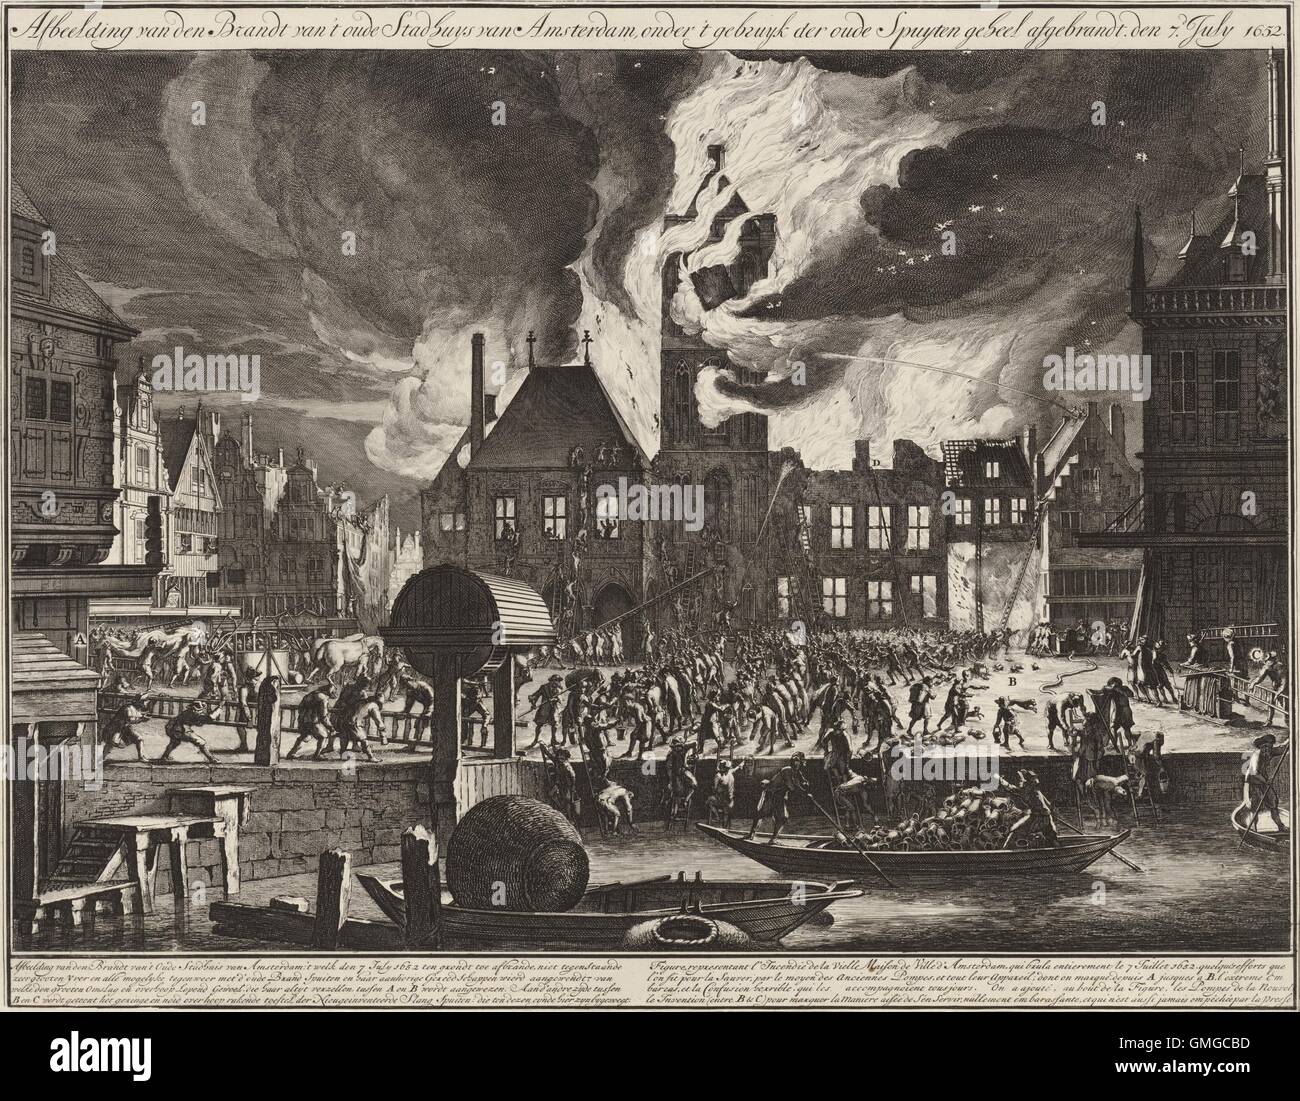 Il fuoco nel municipio della città vecchia di Amsterdam, 1652 da Jan van der Heyden, 1688-90, stampa olandese. Incisione e acquaforte su carta. In primo piano il centro, gli uomini formano una brigata della benna per alimentare acqua al sistema di pompaggio del tubo flessibile di alimentazione a distanza con acqua (BSLOC 2016 3 210) Foto Stock